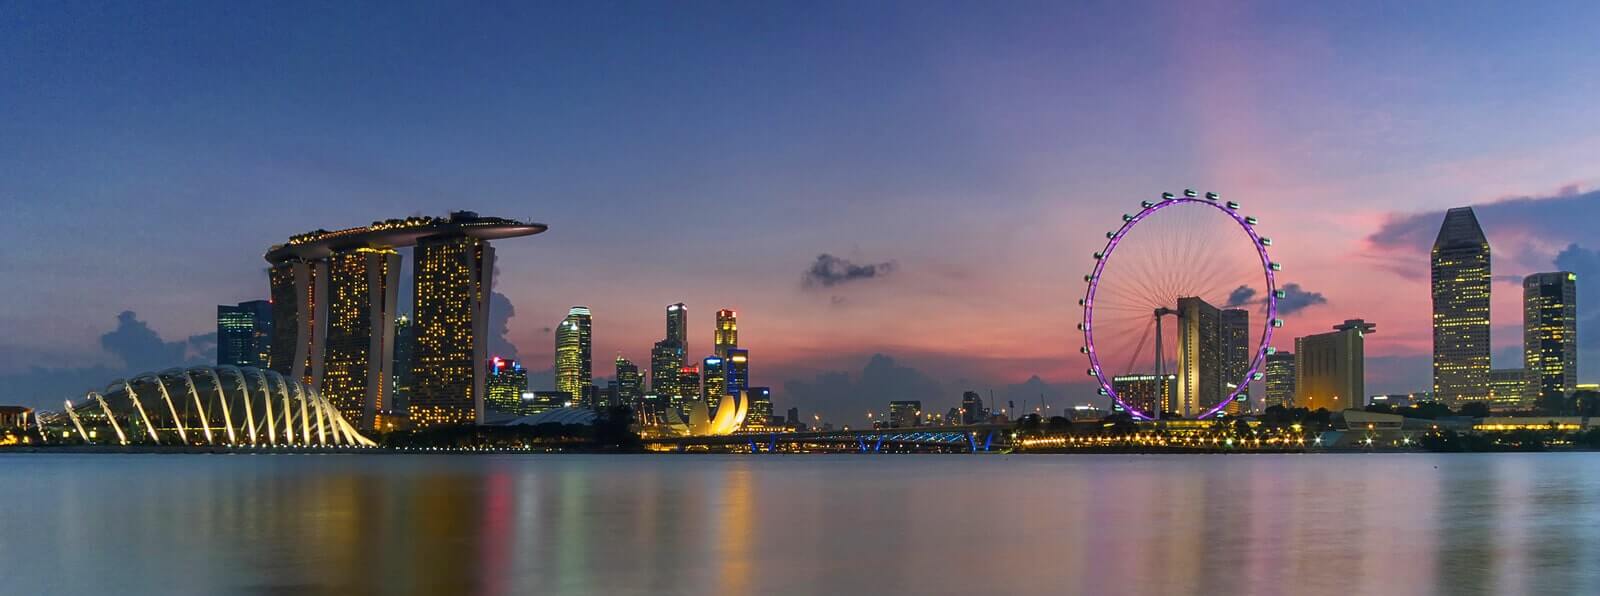 Singapore skyline - image by Eric Au